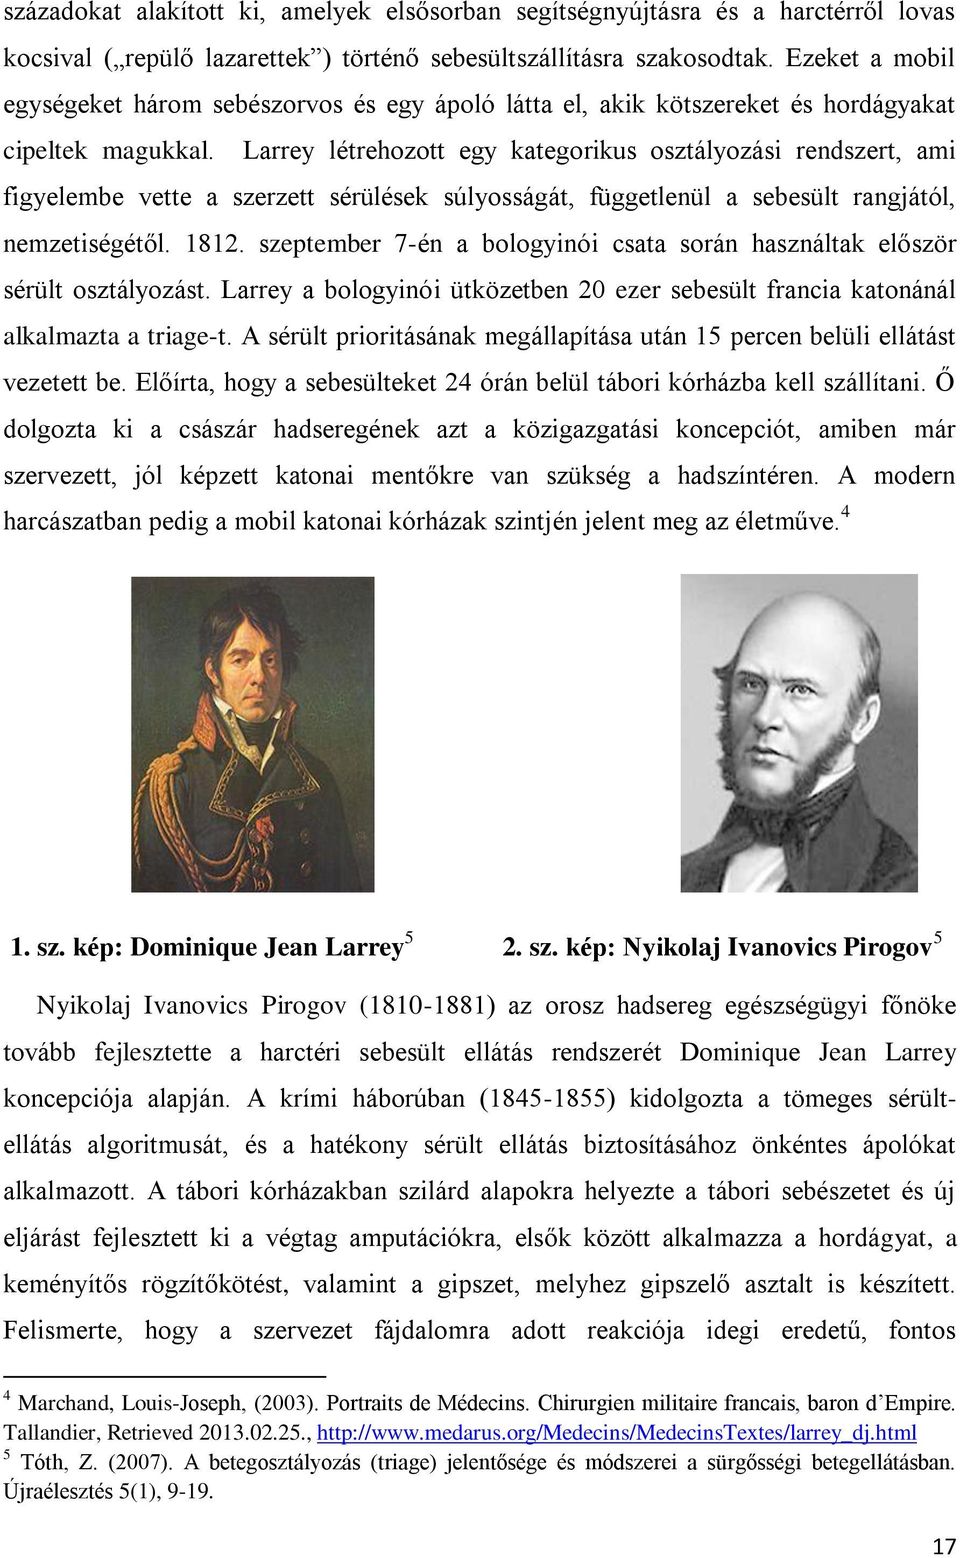 Larrey létrehozott egy kategorikus osztályozási rendszert, ami figyelembe vette a szerzett sérülések súlyosságát, függetlenül a sebesült rangjától, nemzetiségétől. 1812.